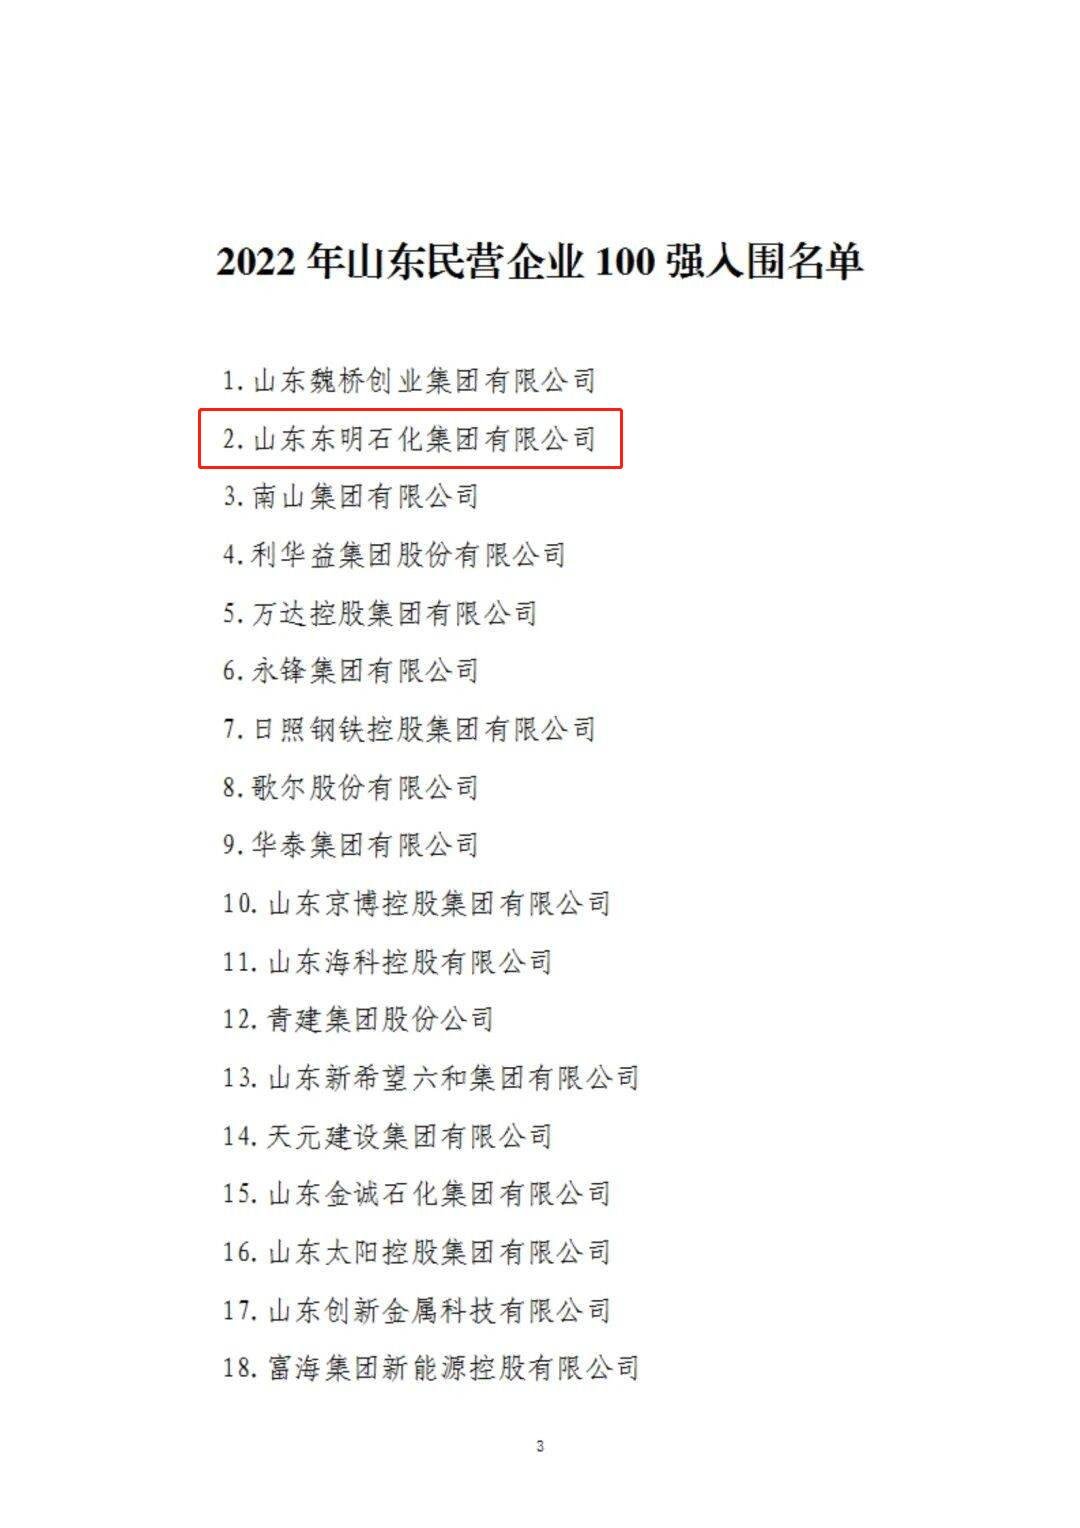 2022年山东民营企业100强入围名单公布 东明石化位列第二